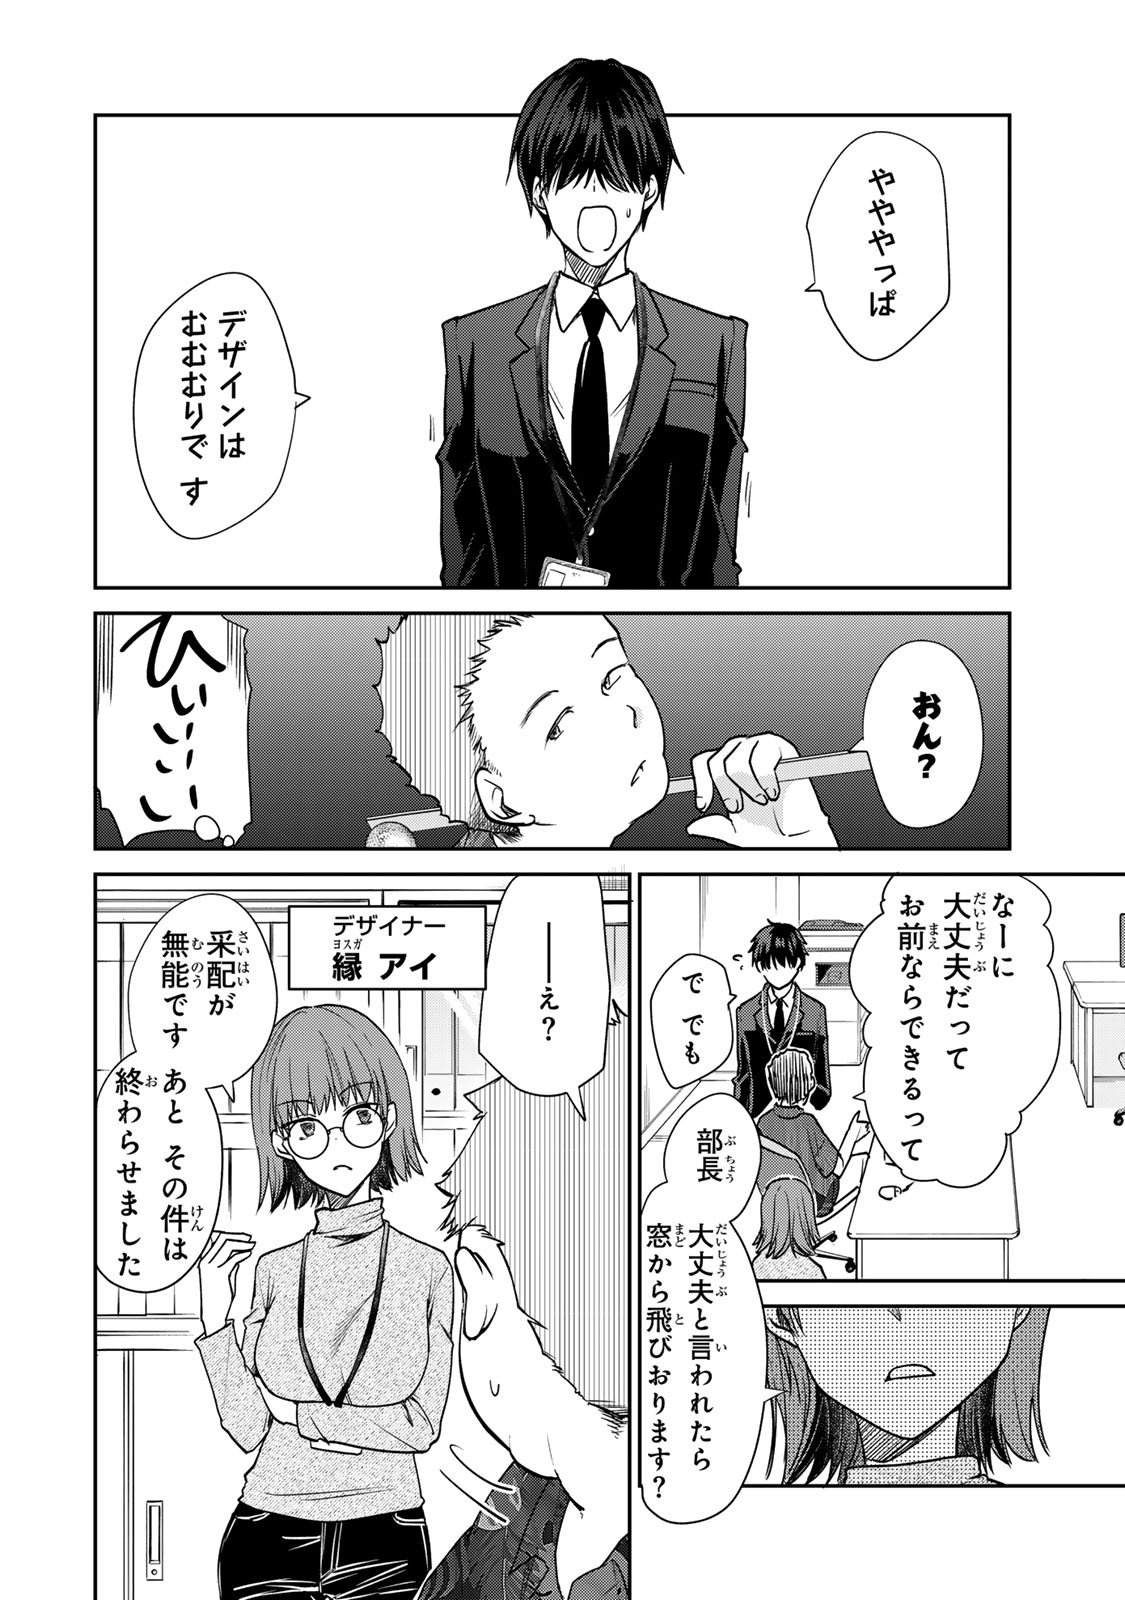 Kyou no Ohiru wa Nan desu ka? - Chapter 2 - Page 20